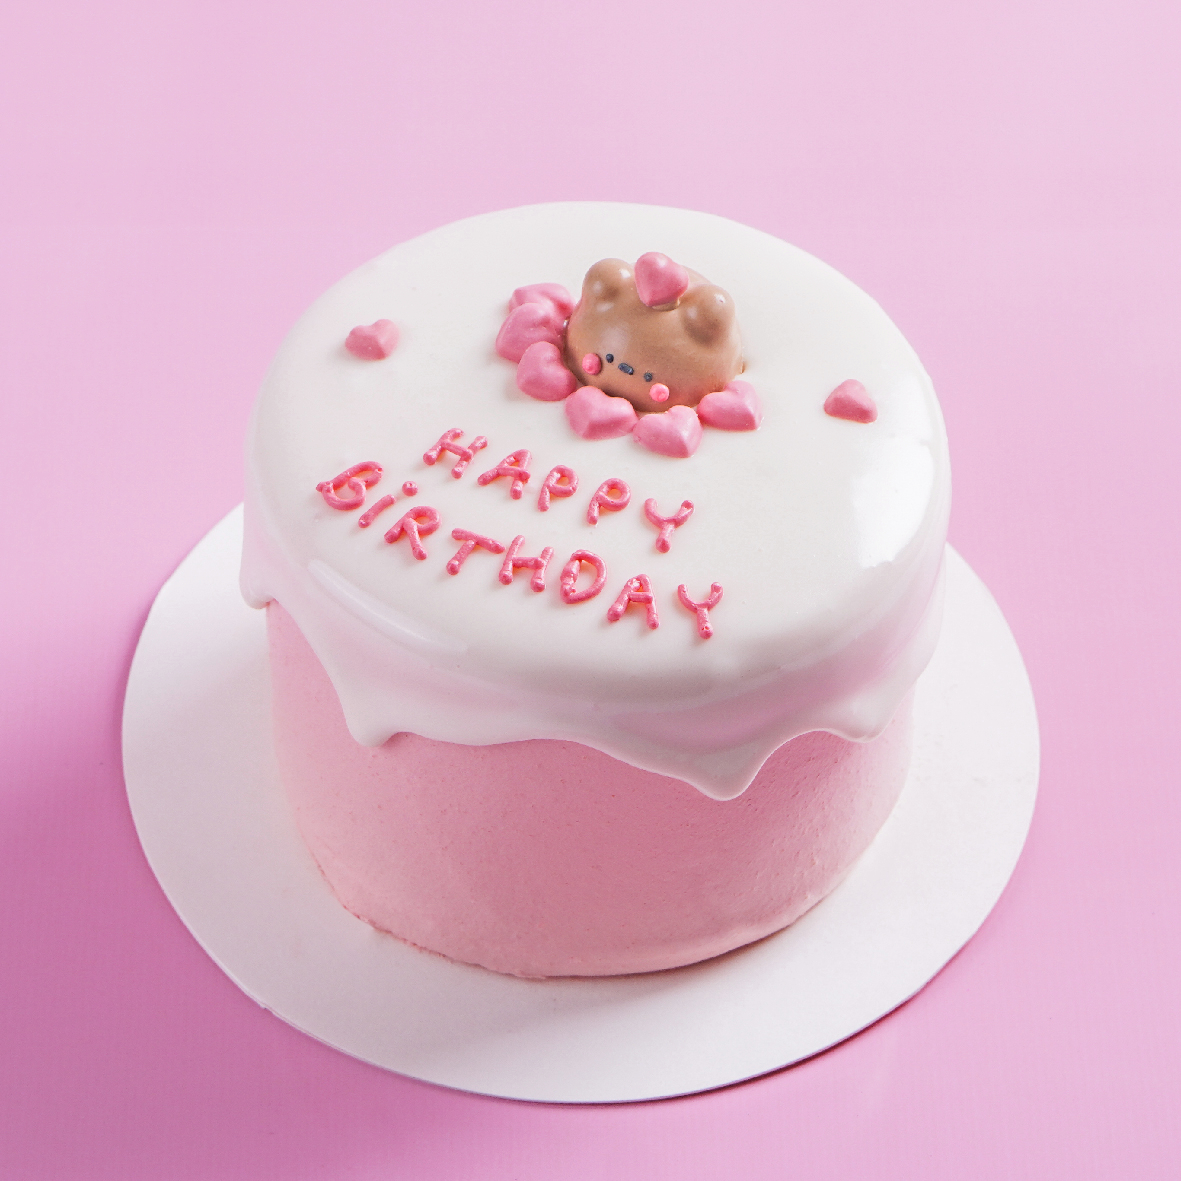 สั่งเค้กวันเกิด เค้กสตรอเบอร์รี่ - โบว์เค้ก ร้านเค้กมินิมอล เริ่ม 260